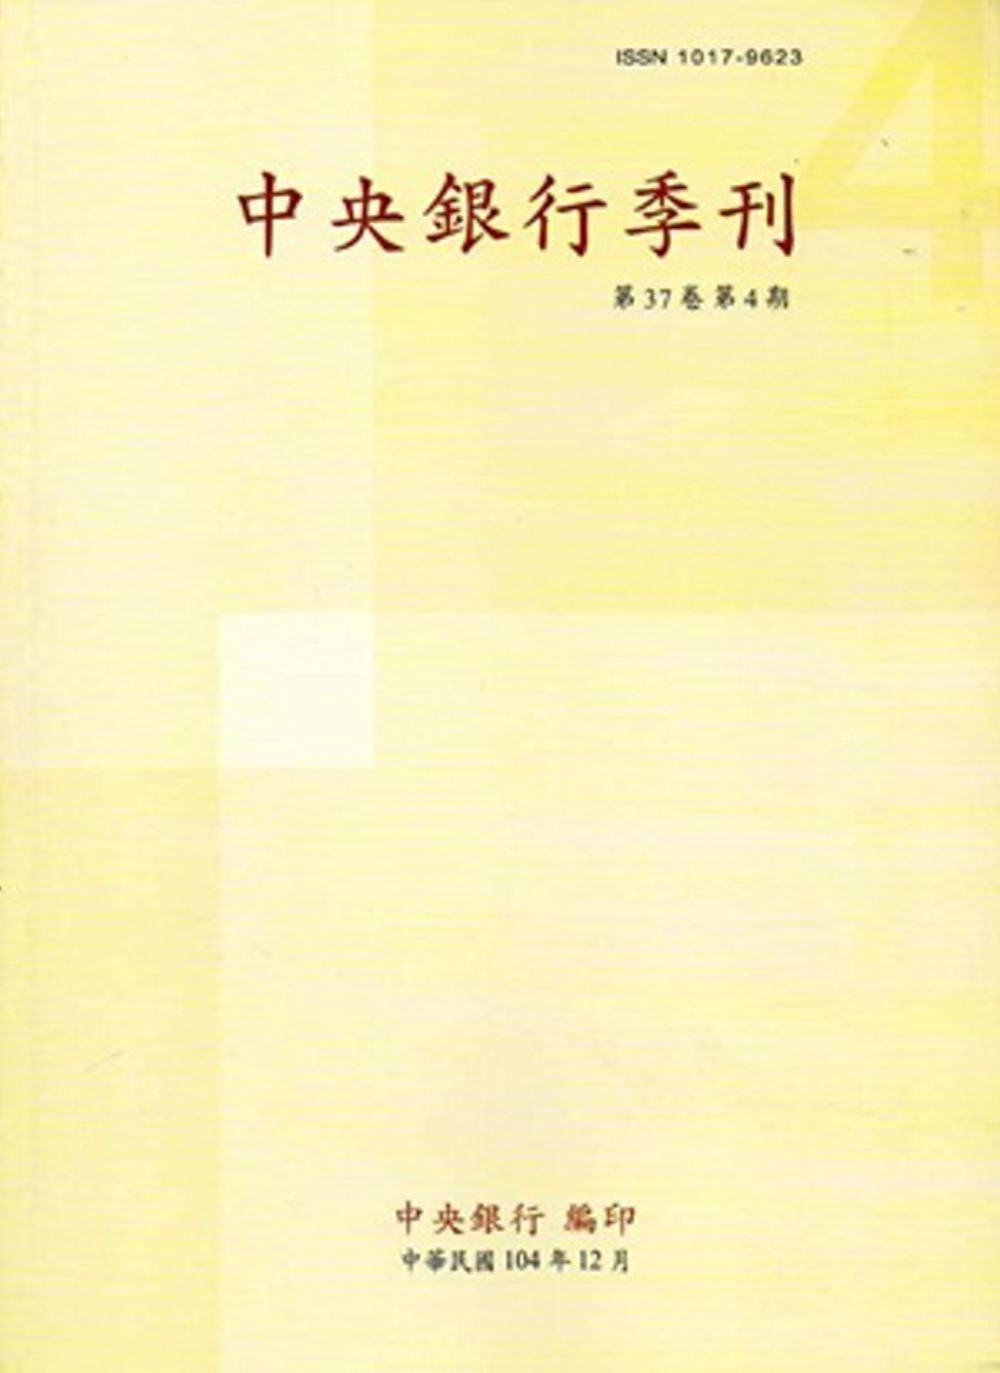 中央銀行季刊37卷4期(104.12)